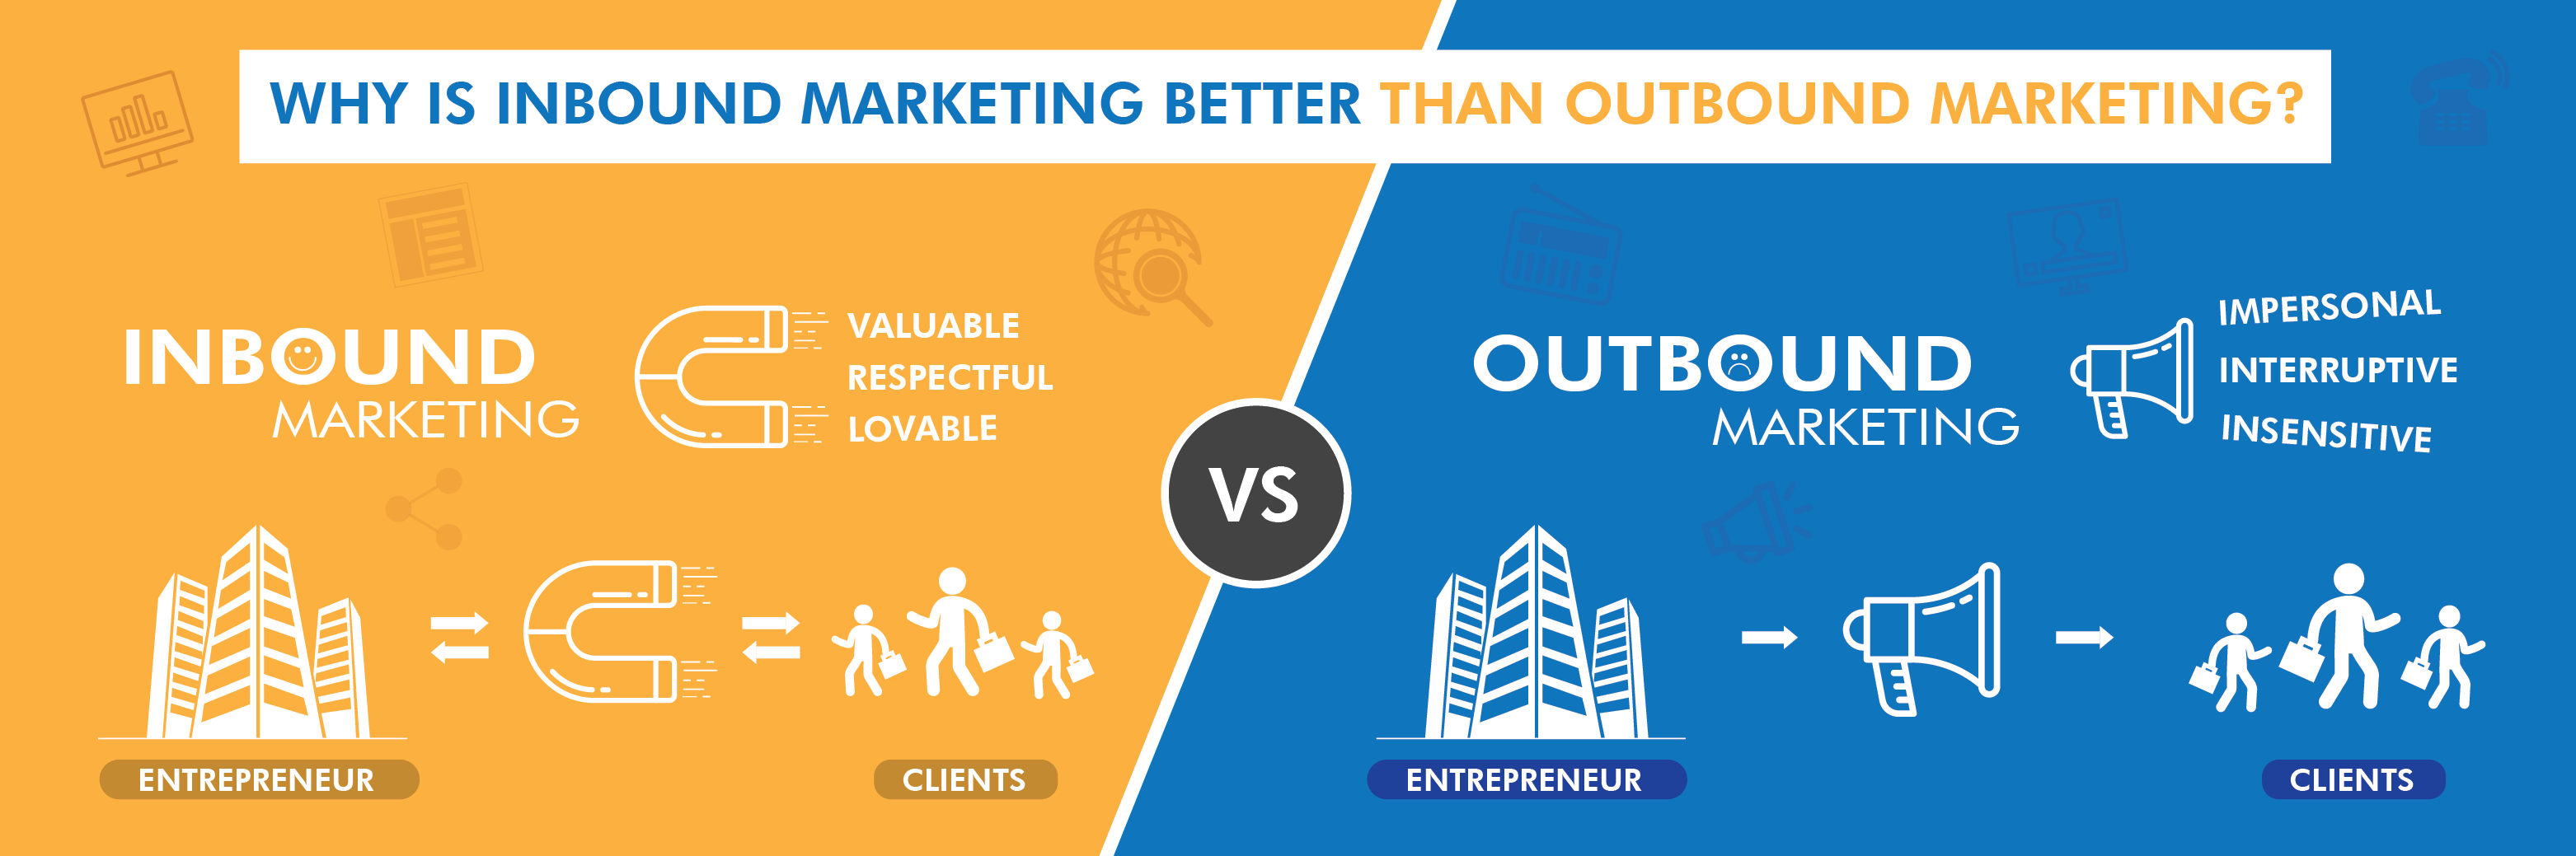 تفاوت بازاریابی درونگرا یا inbound marketing و بازاریابی سنتی یا traditional marketing